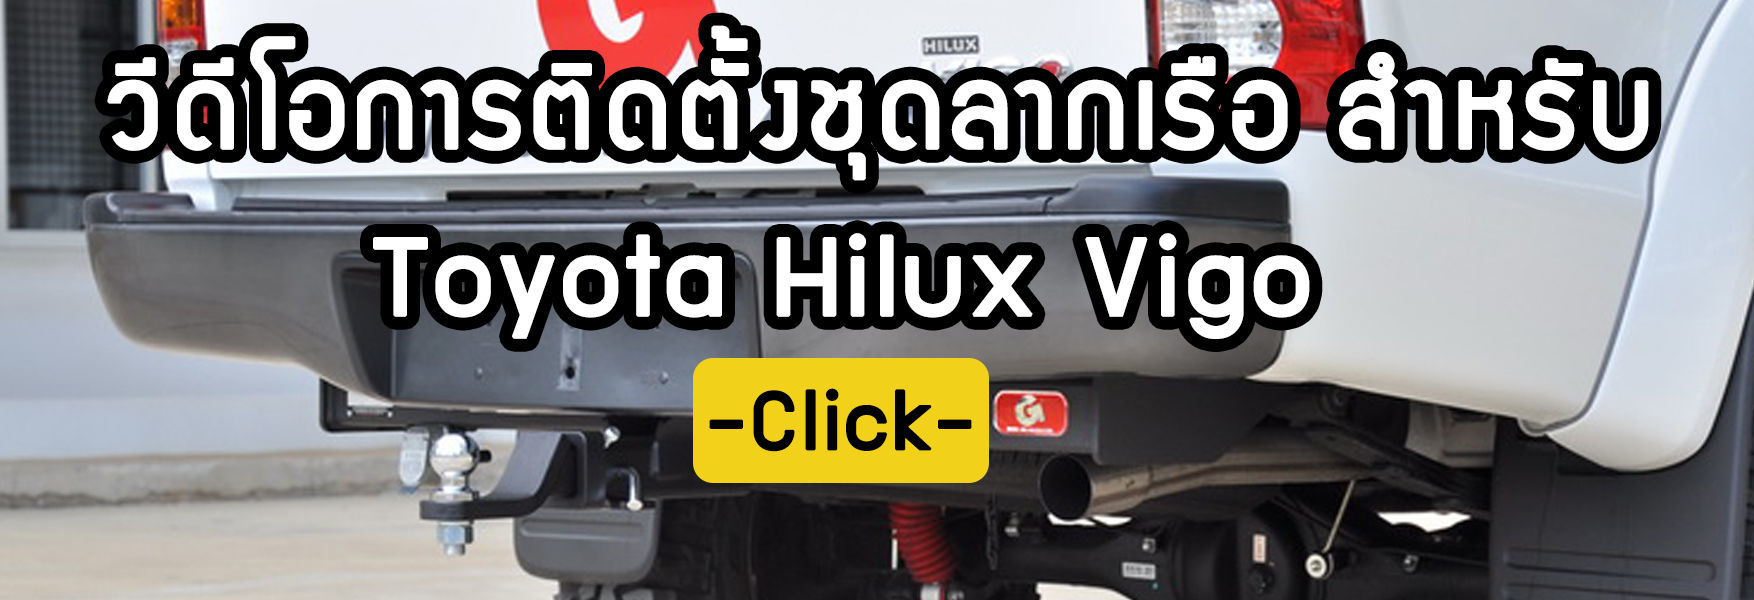 ขั้นตอนการติดตั้งชุดลากเรือ Toyota Hilux Vigo